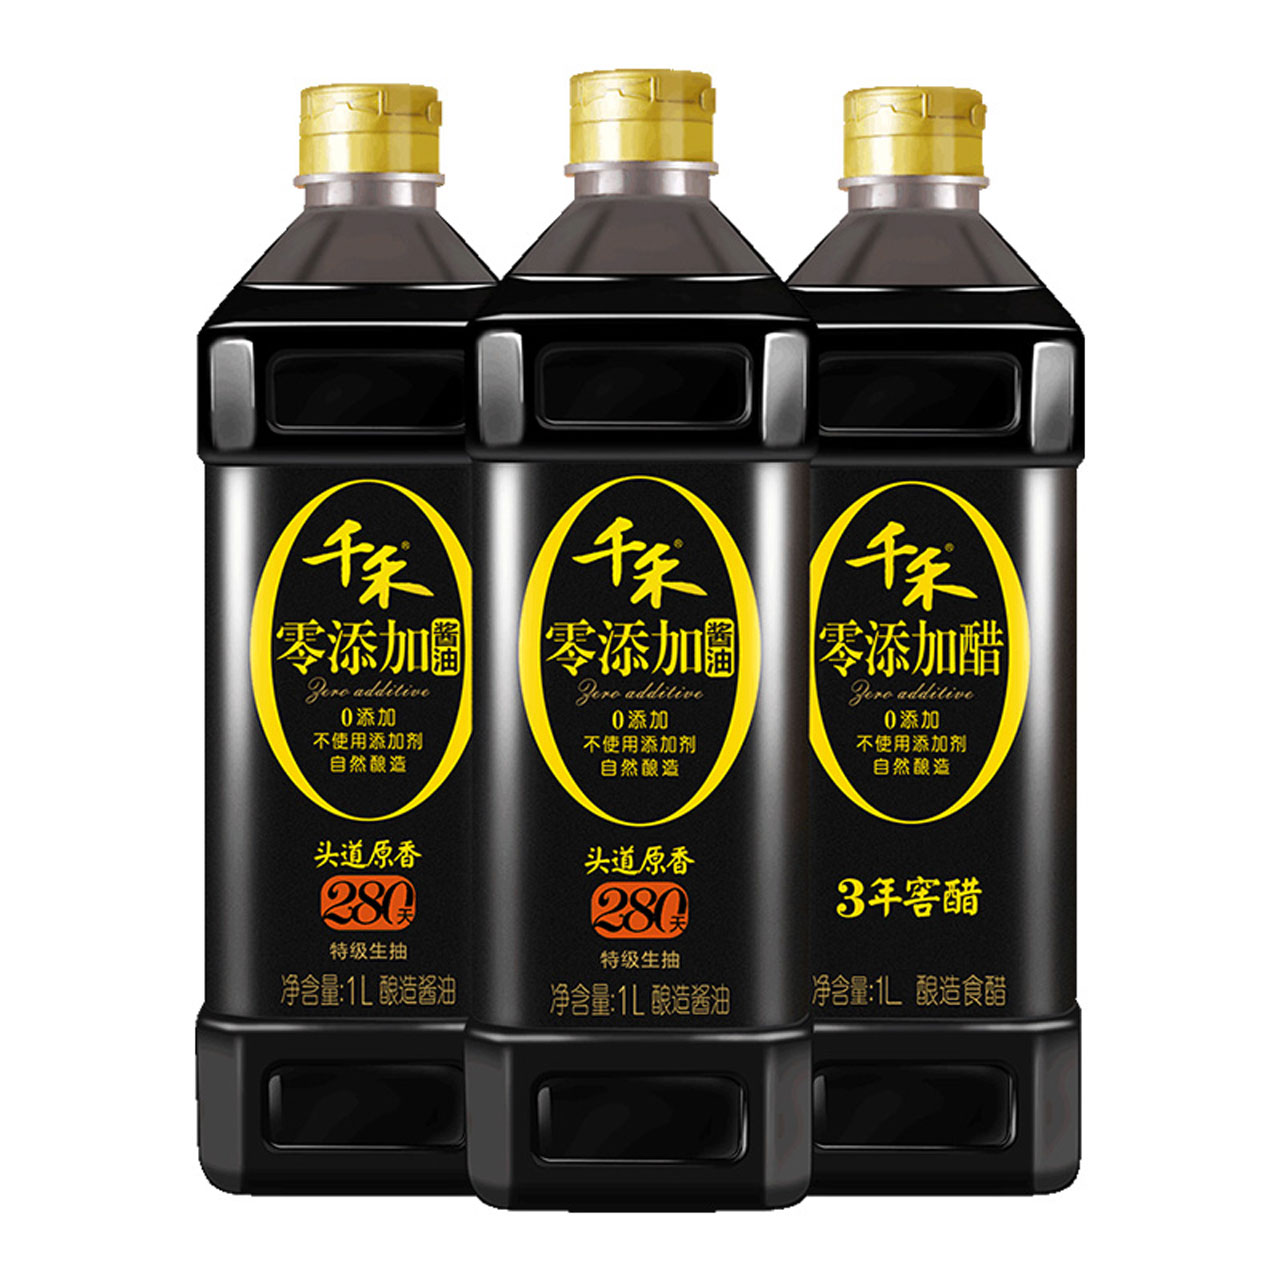 有机酱油500ml*4,降价幅度65.3%